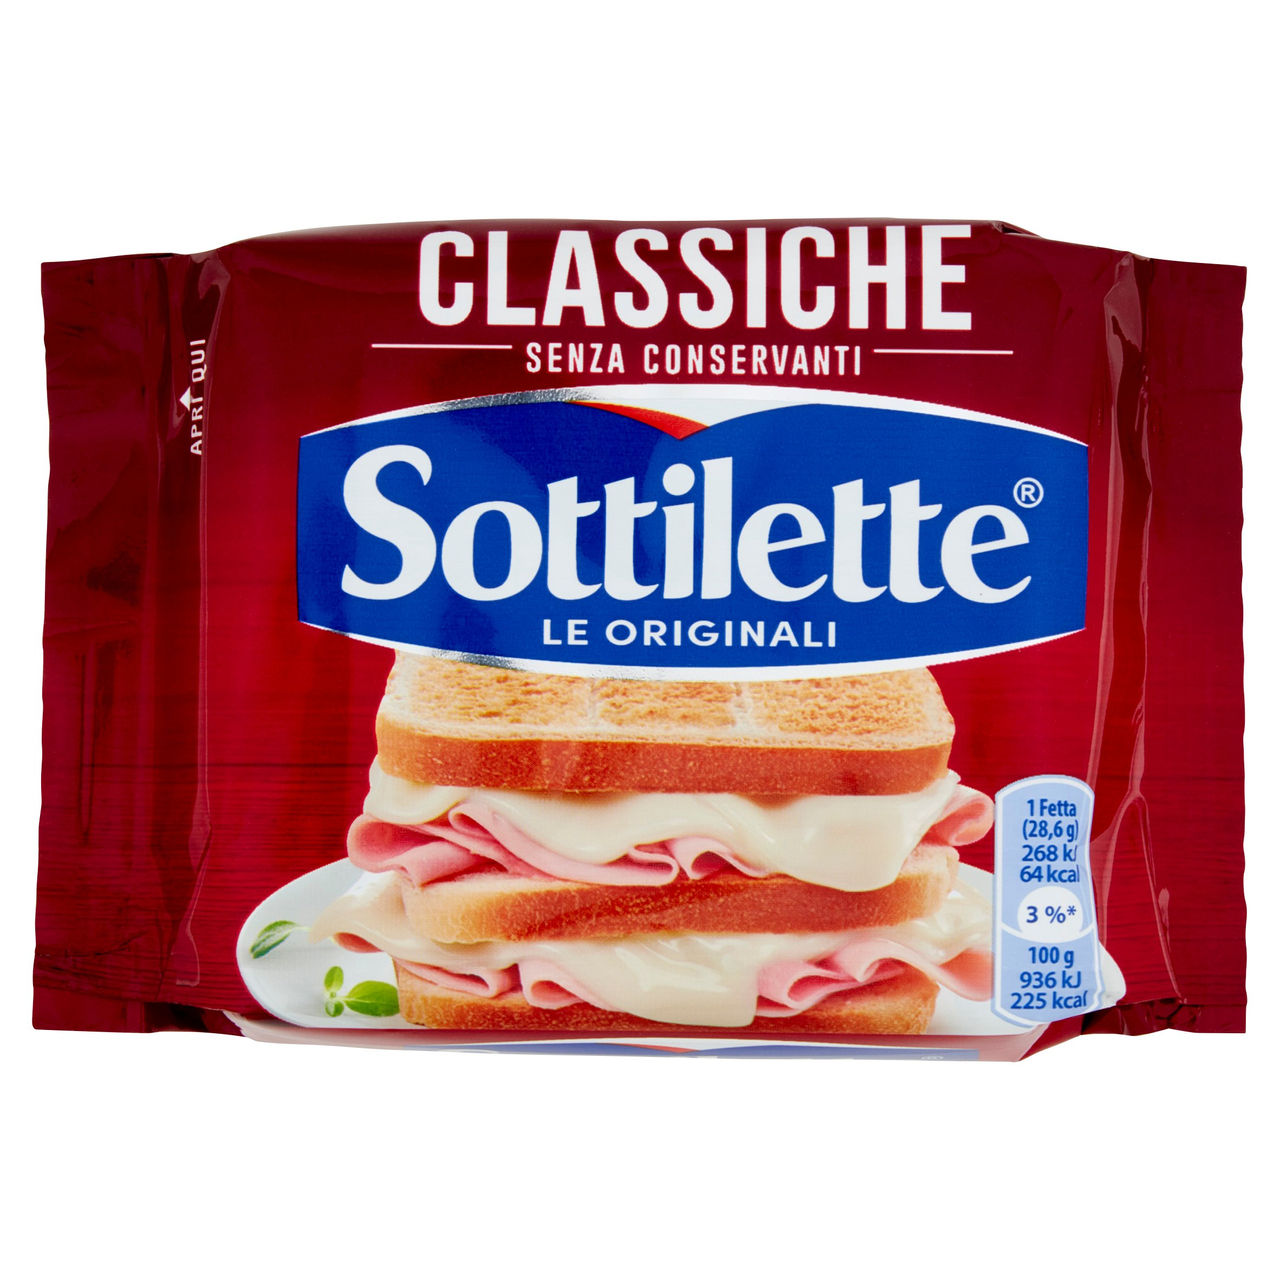 Sottilette Classiche 200 g in vendita online